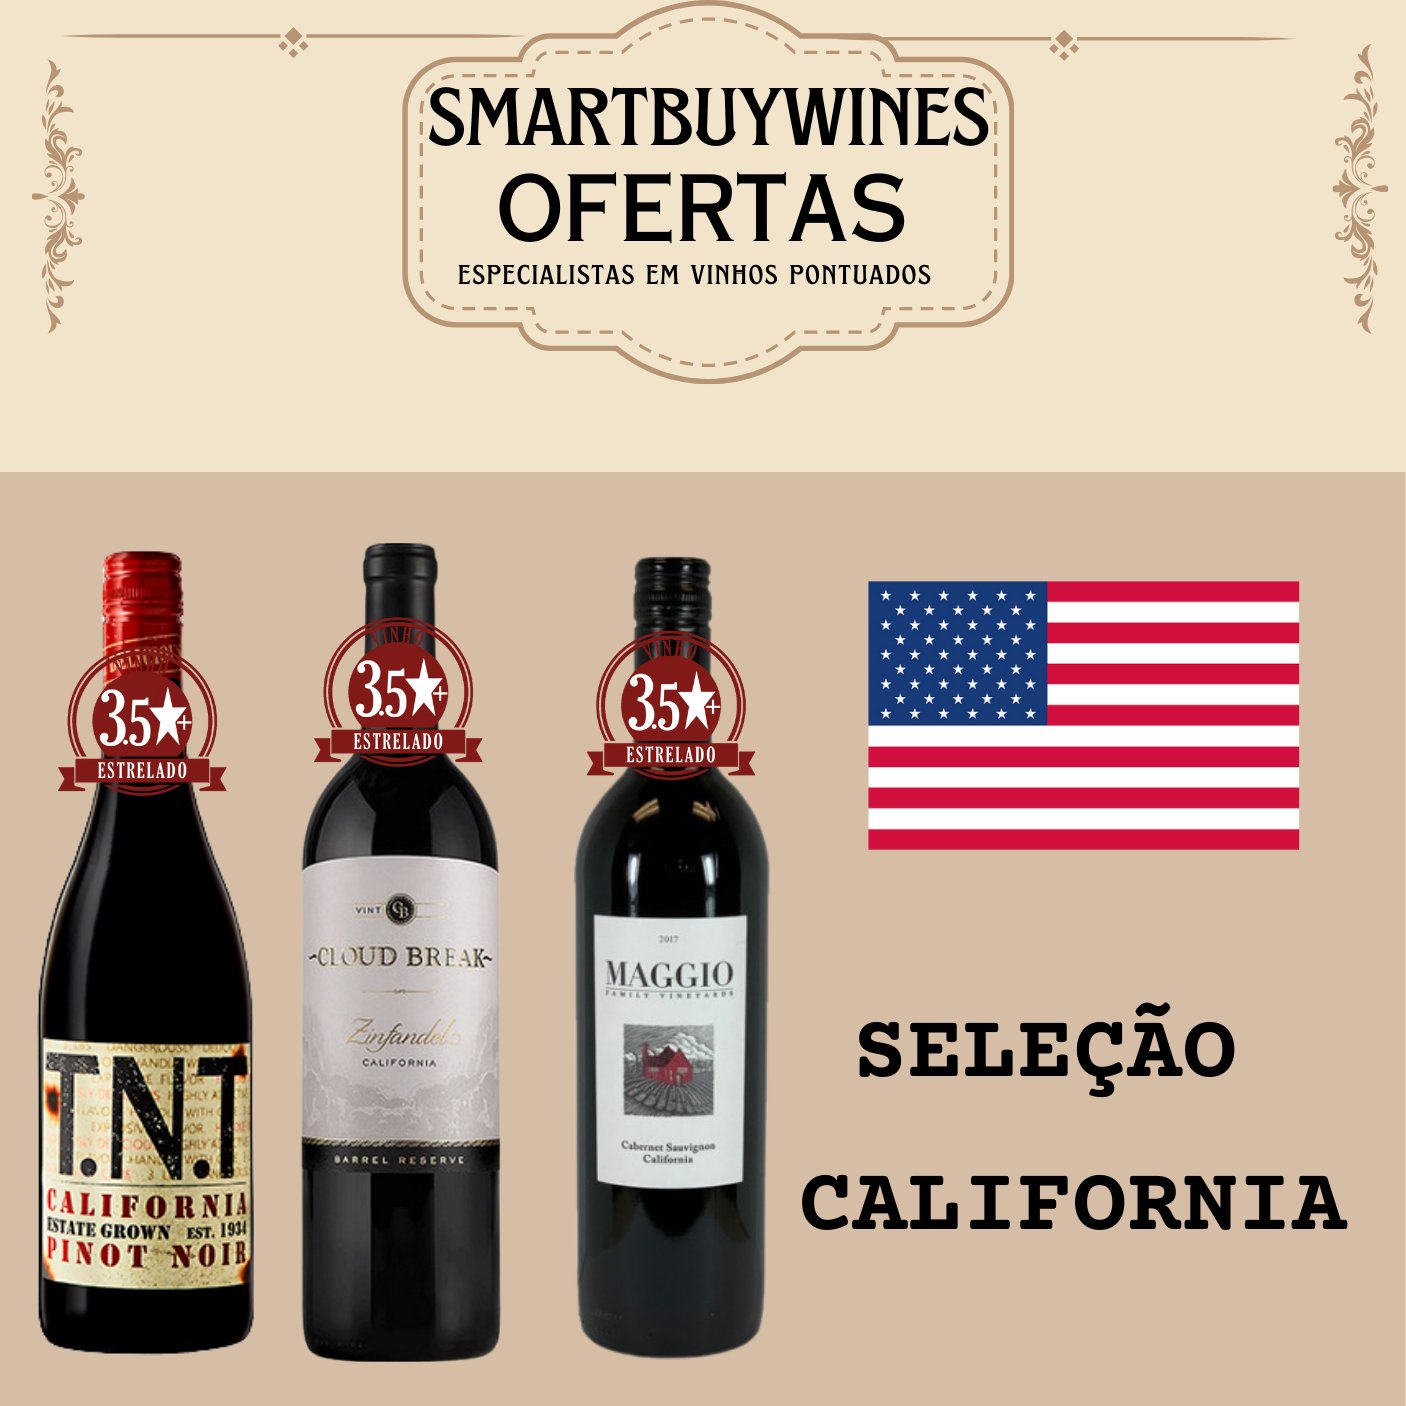 Seleção em oferta - California - caixa de 3 vinhos - SmartBuyWines.com.br